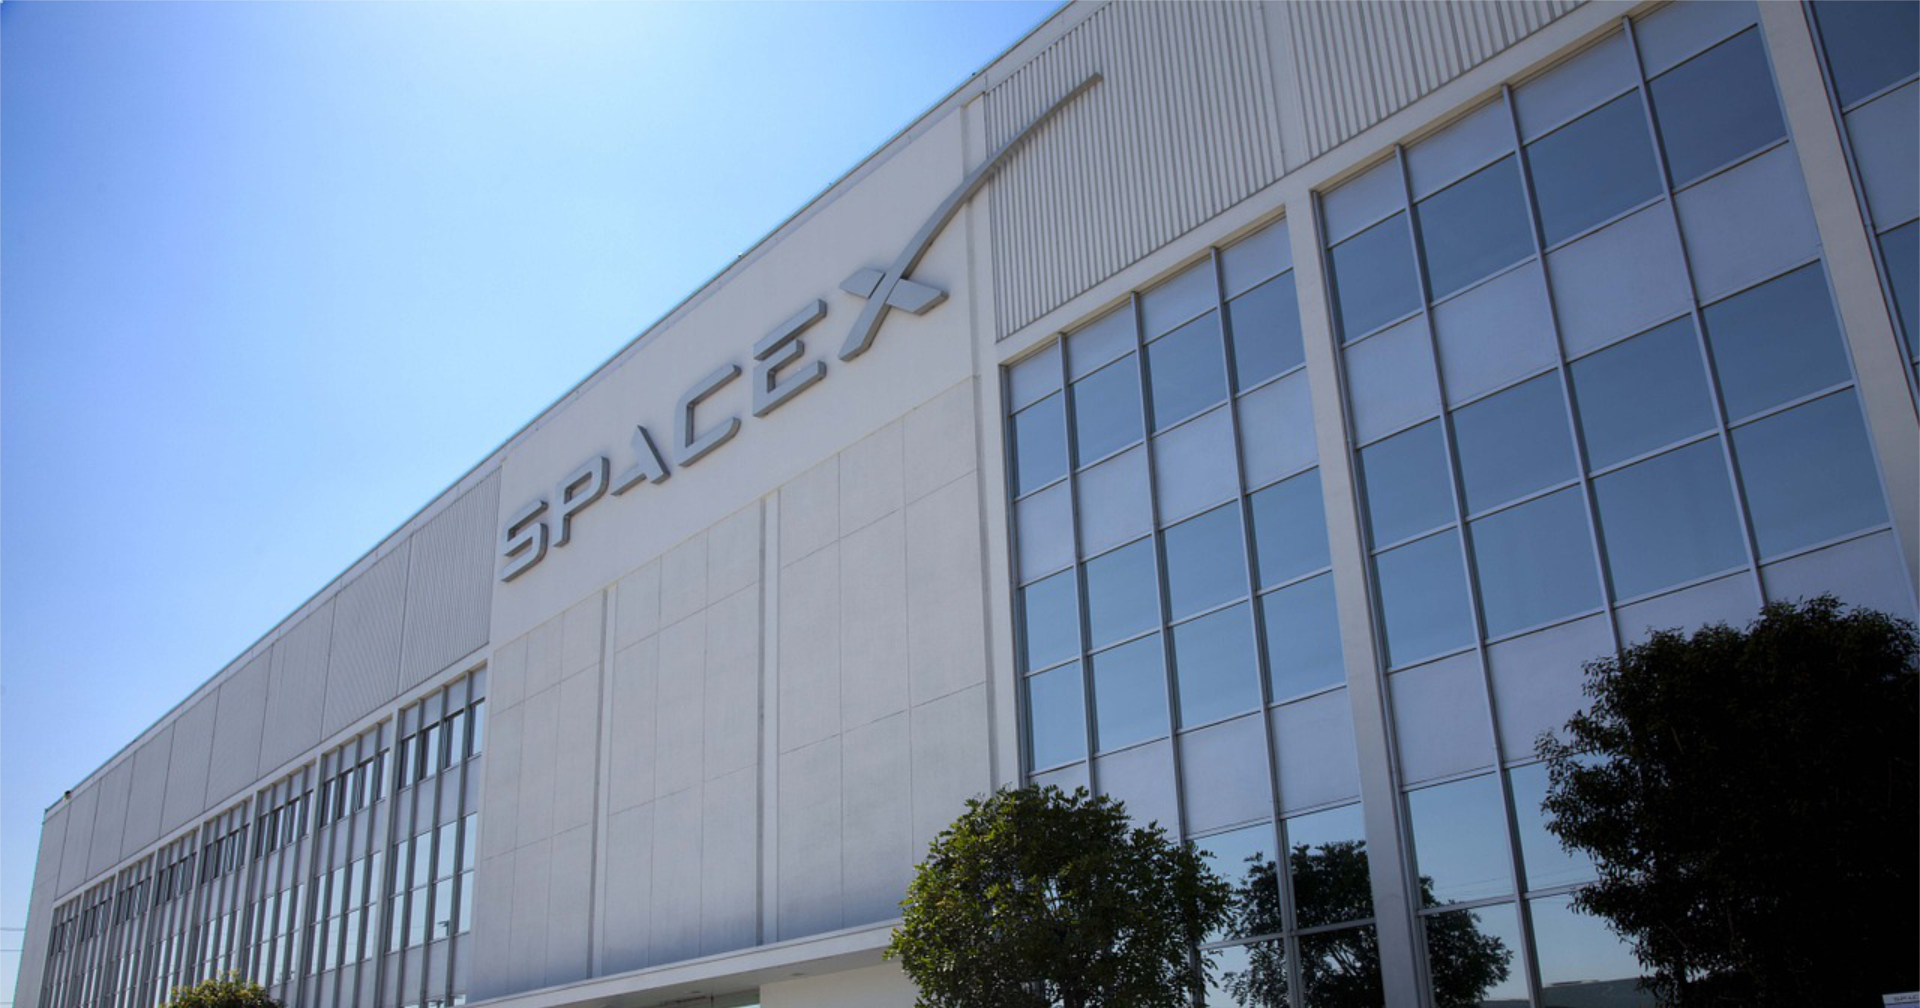 Justice Department sues SpaceX, alleging discriminatory hiring practices